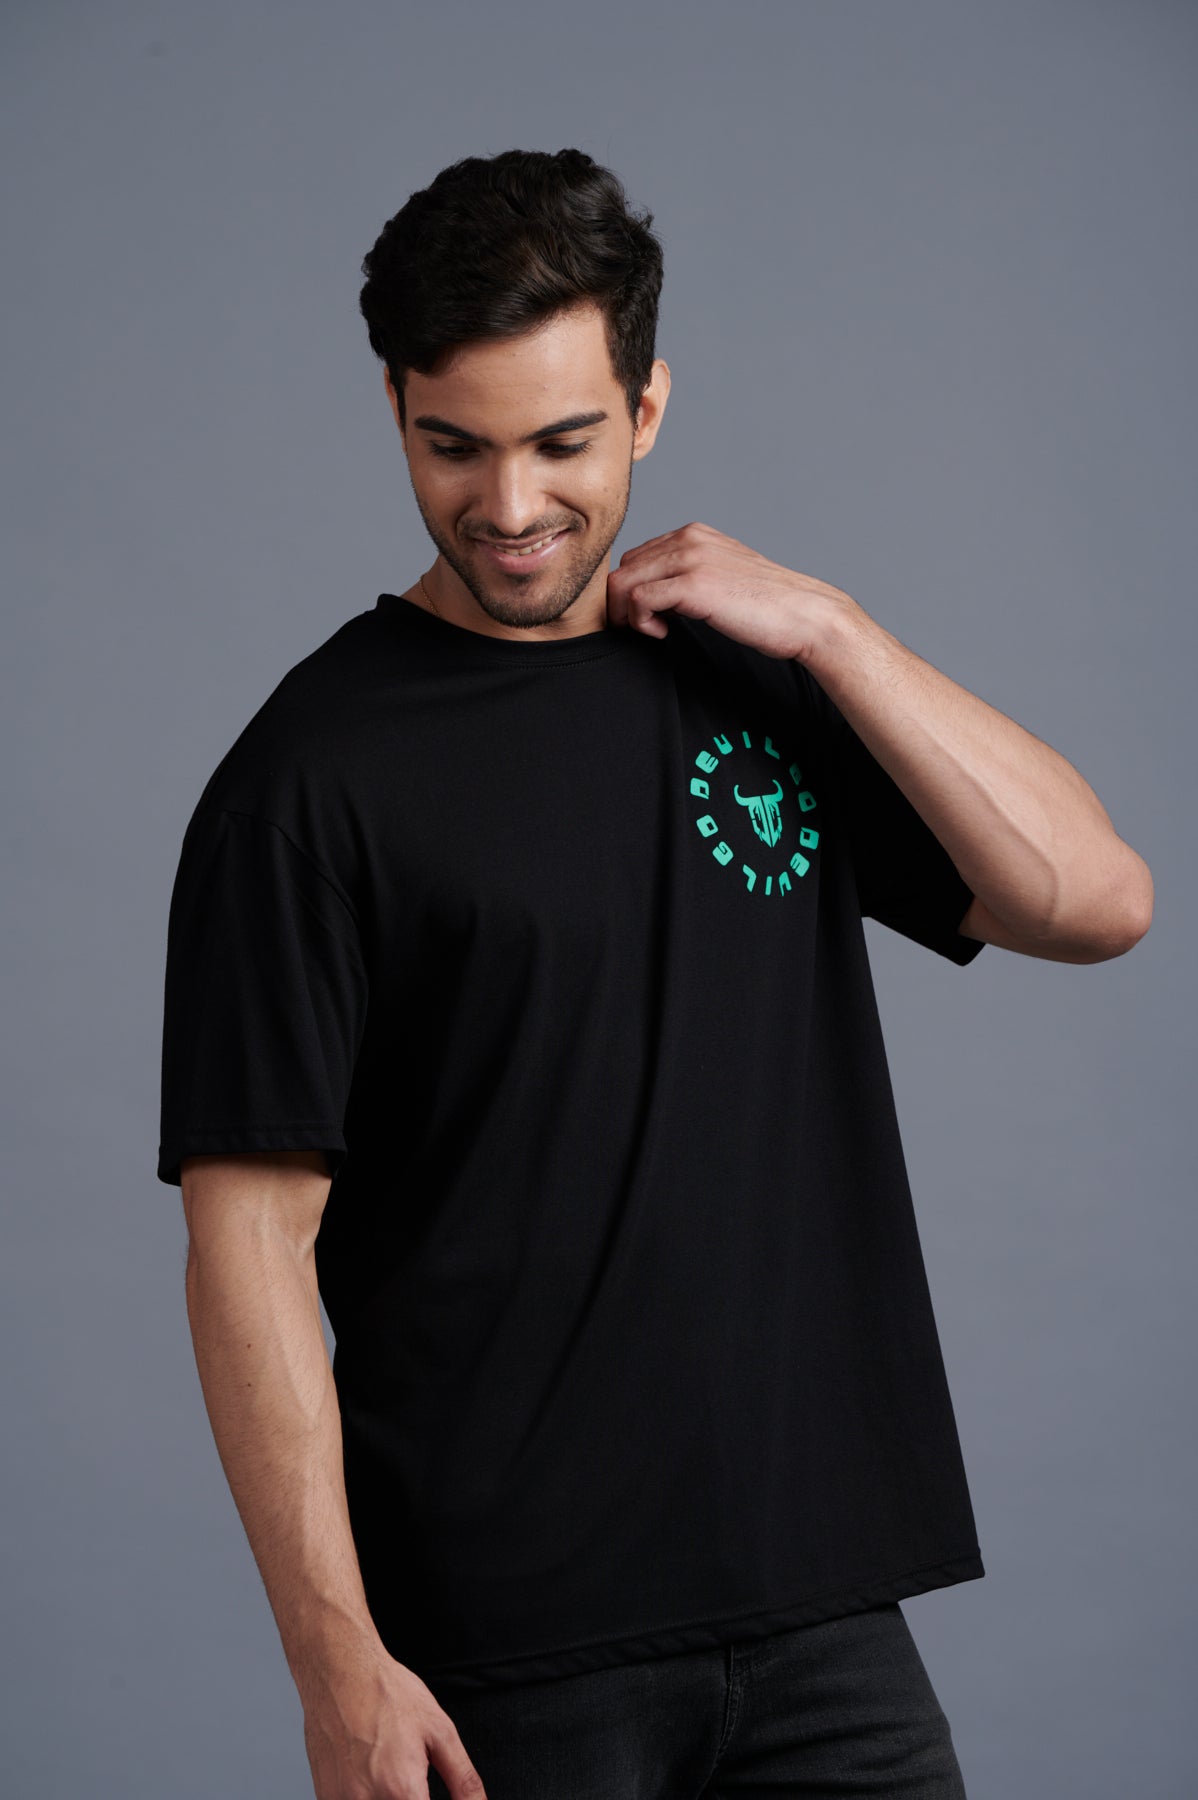 Green Devil Printed Black Oversized T-Shirt for Men - Go Devil